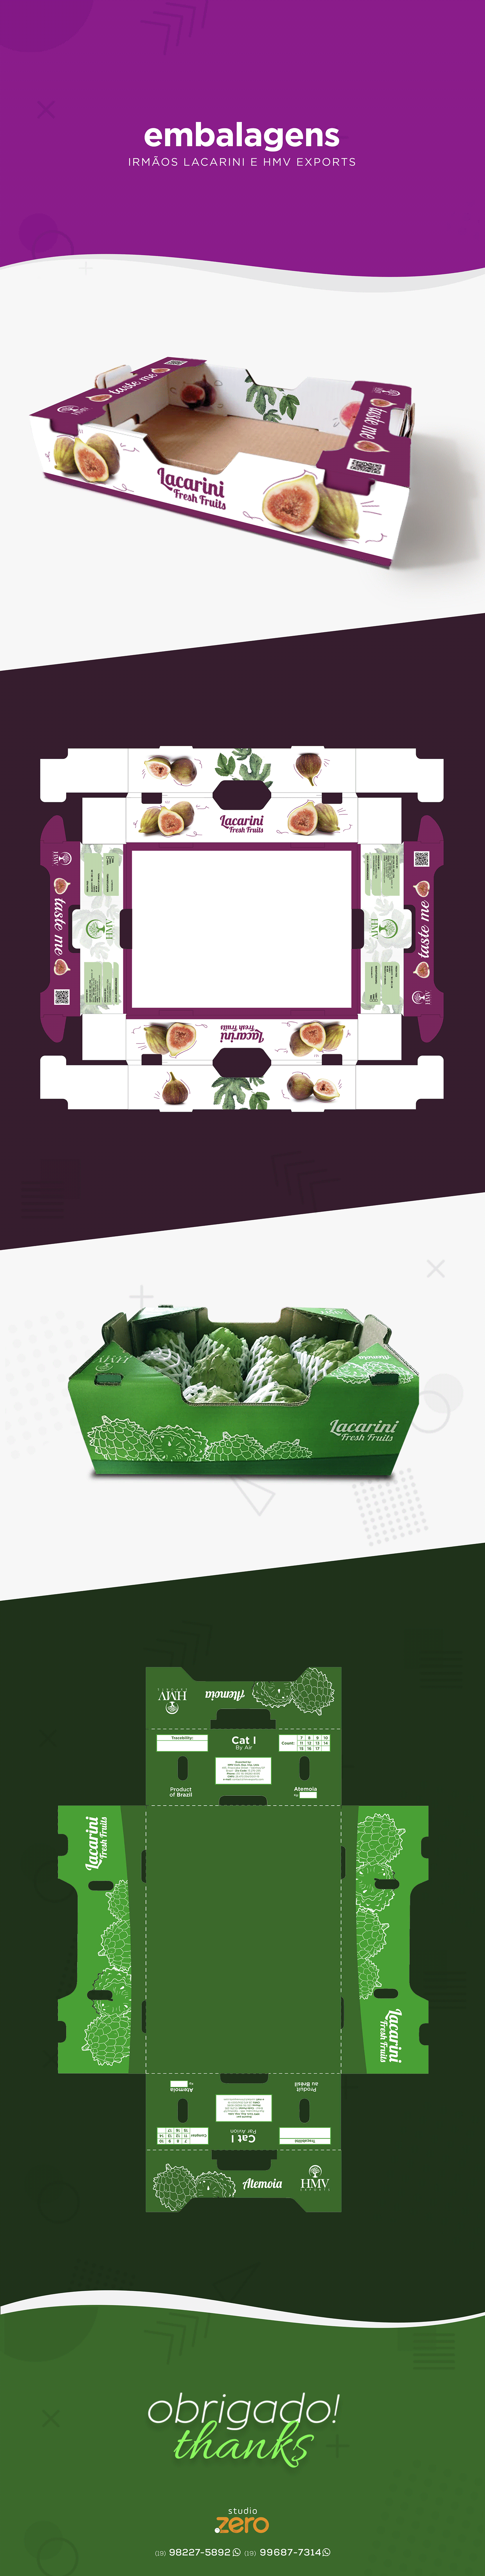 caixa de frutas Caixa de papelão criação de embalagem design gráfico embalagem embalagem caixa embalagem caixa de frutas embalagens layout caixa